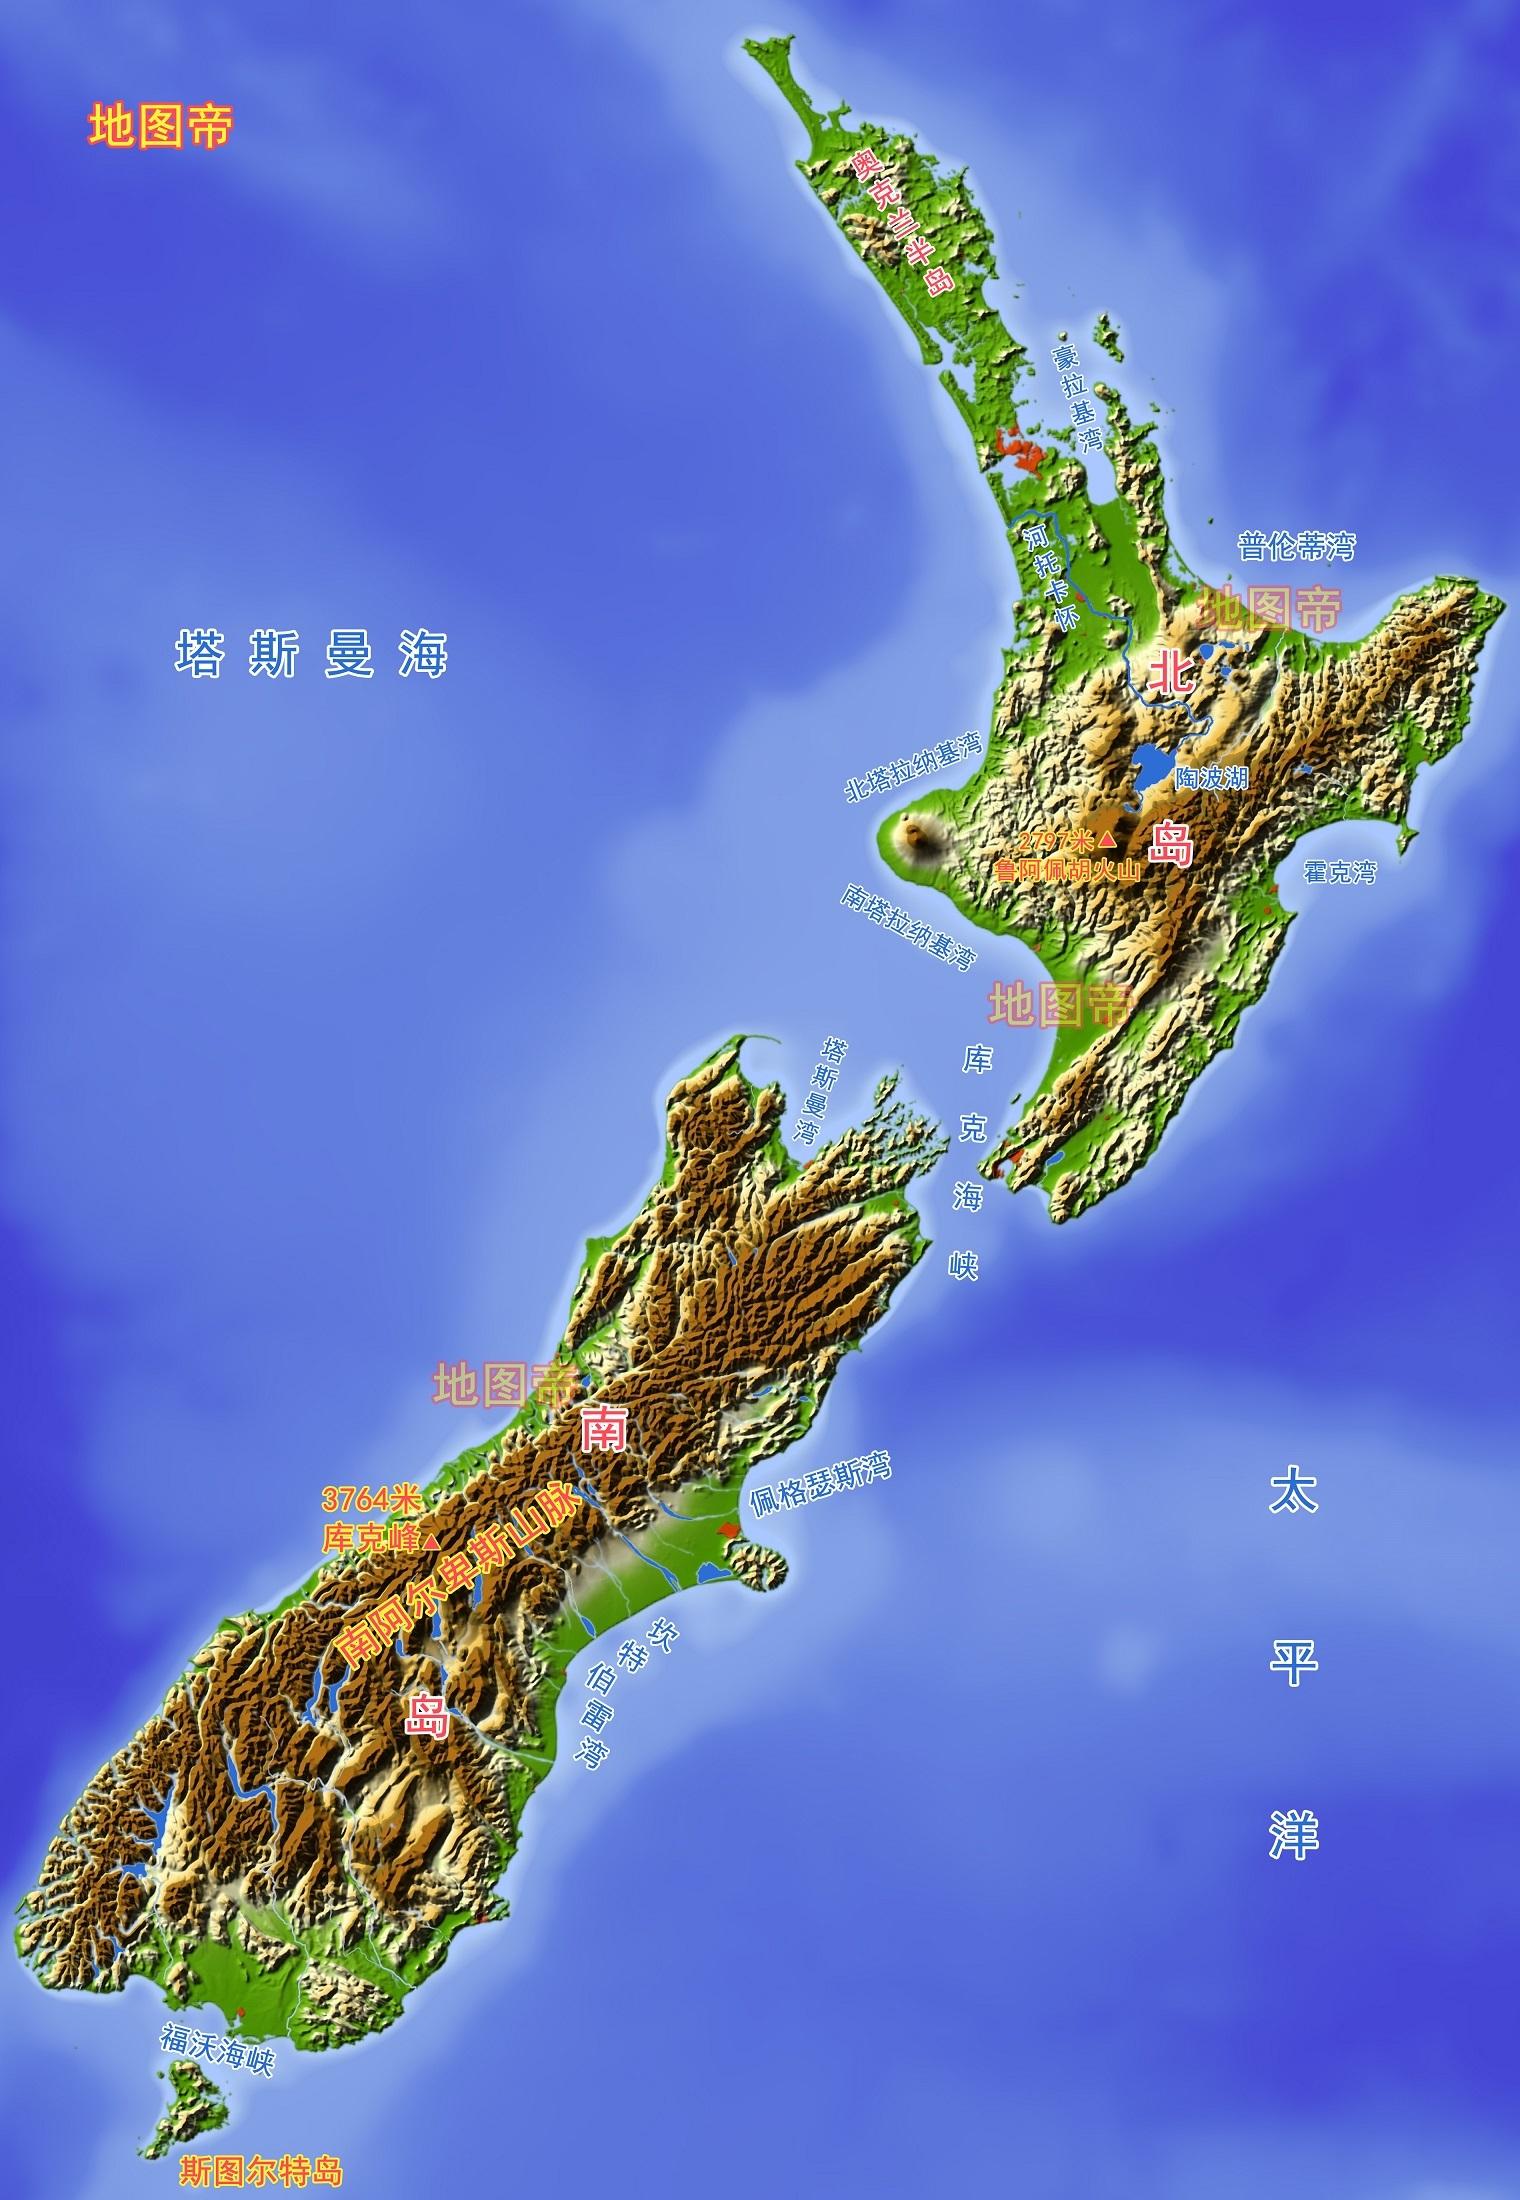 新西兰南北两岛之间,为何不架设一座桥梁?